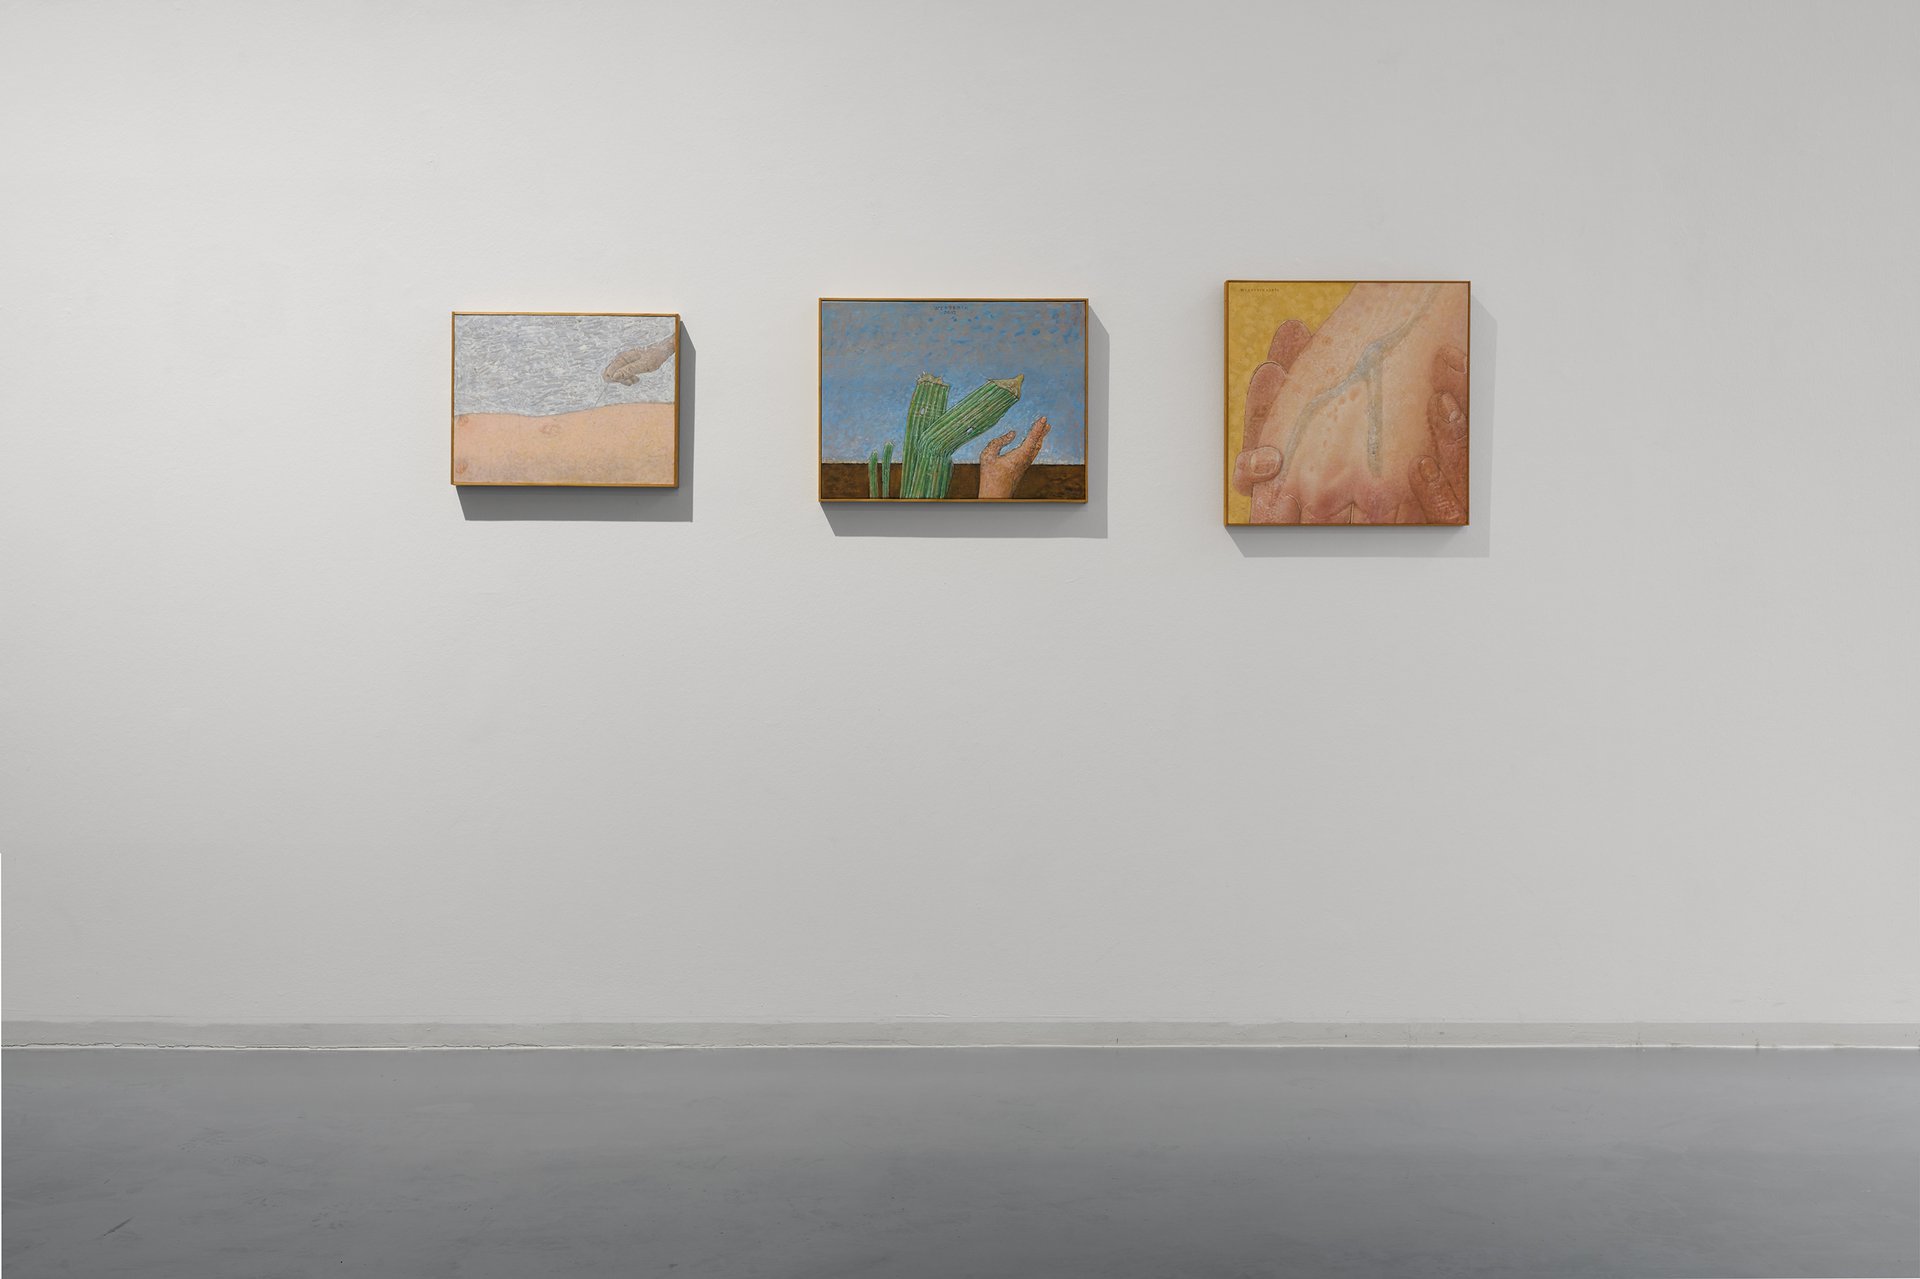 Michael Kleine, Ofen, 2015. Ausstellungsansicht: The Holding Environment, Bonner Kunstverein, 2021. Foto: Mareike Tocha. Courtesy der Künstler.